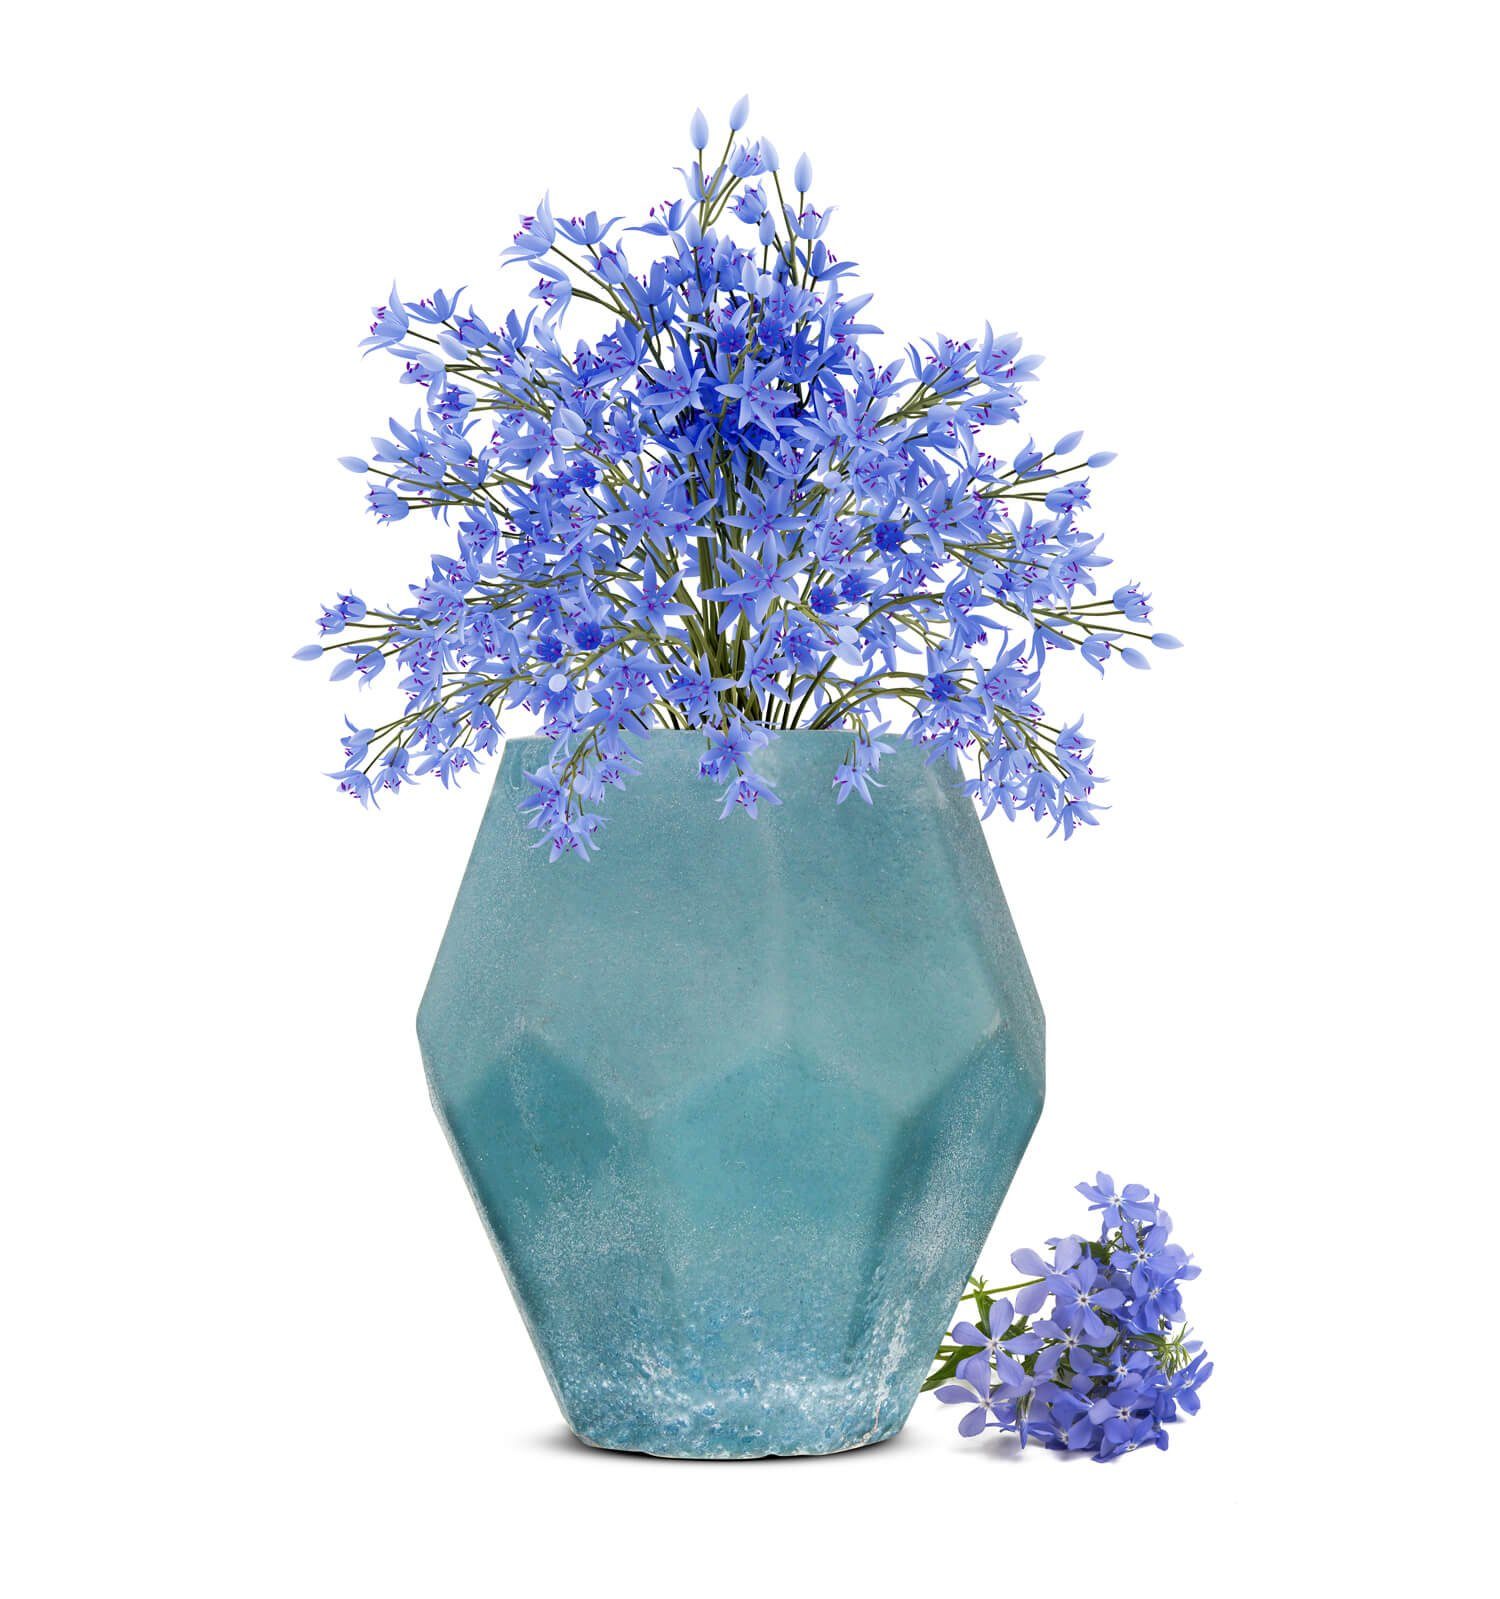 Sendez Dekovase Blumenvase Heidi Vase Tischvase Glasvase Dekovase Blumentopf Pflanztopf Blau